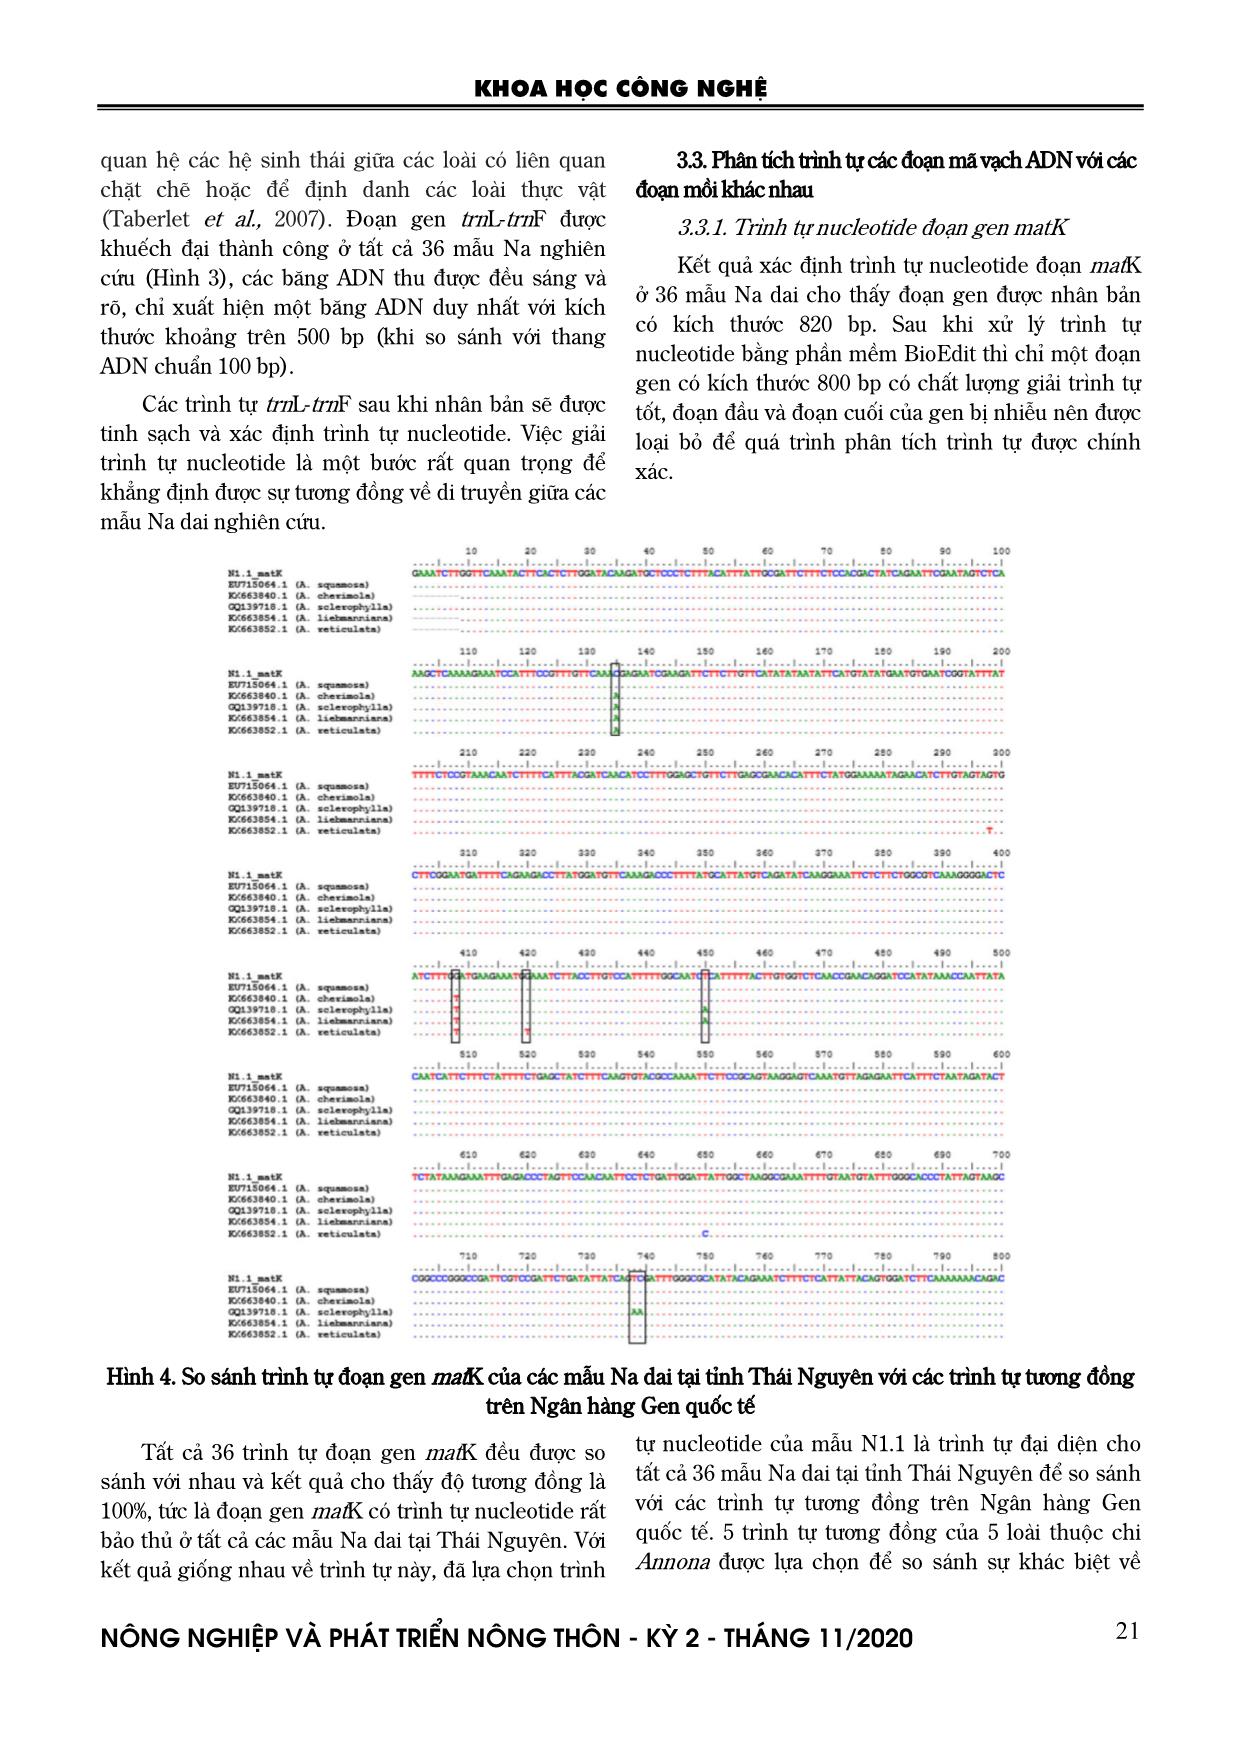 Nghiên cứu xác định một số trình tự ADN mã vạch phục vụ công tác phân loại và nhận dạng các giống na dai (Annona squamosa) tại Thái Nguyên trang 5